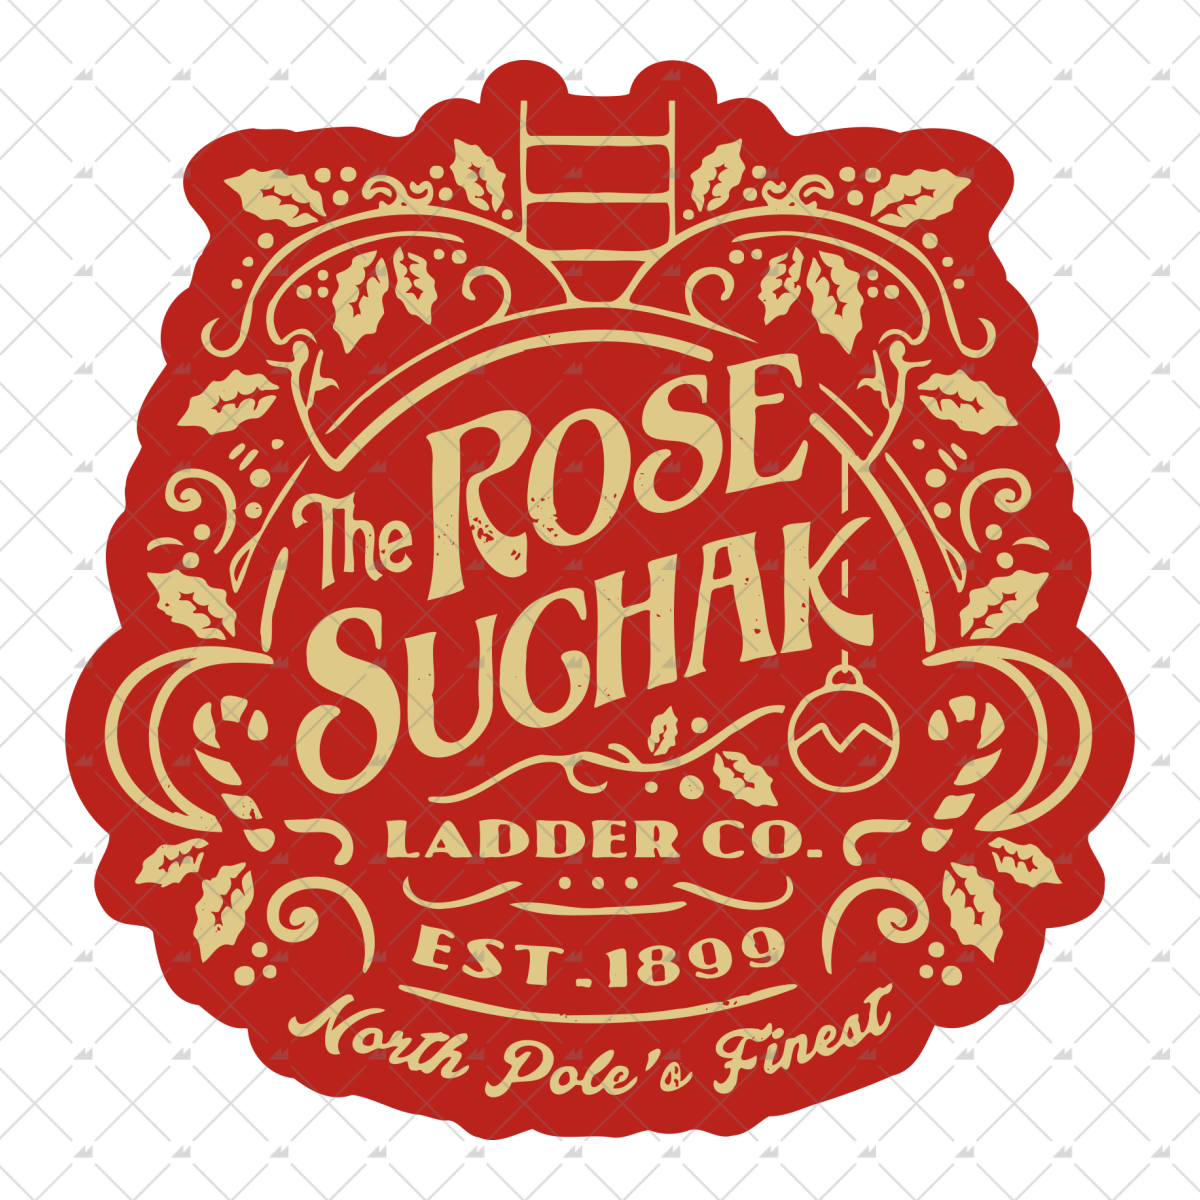 The Rose Suchak Ladder Co - Sticker